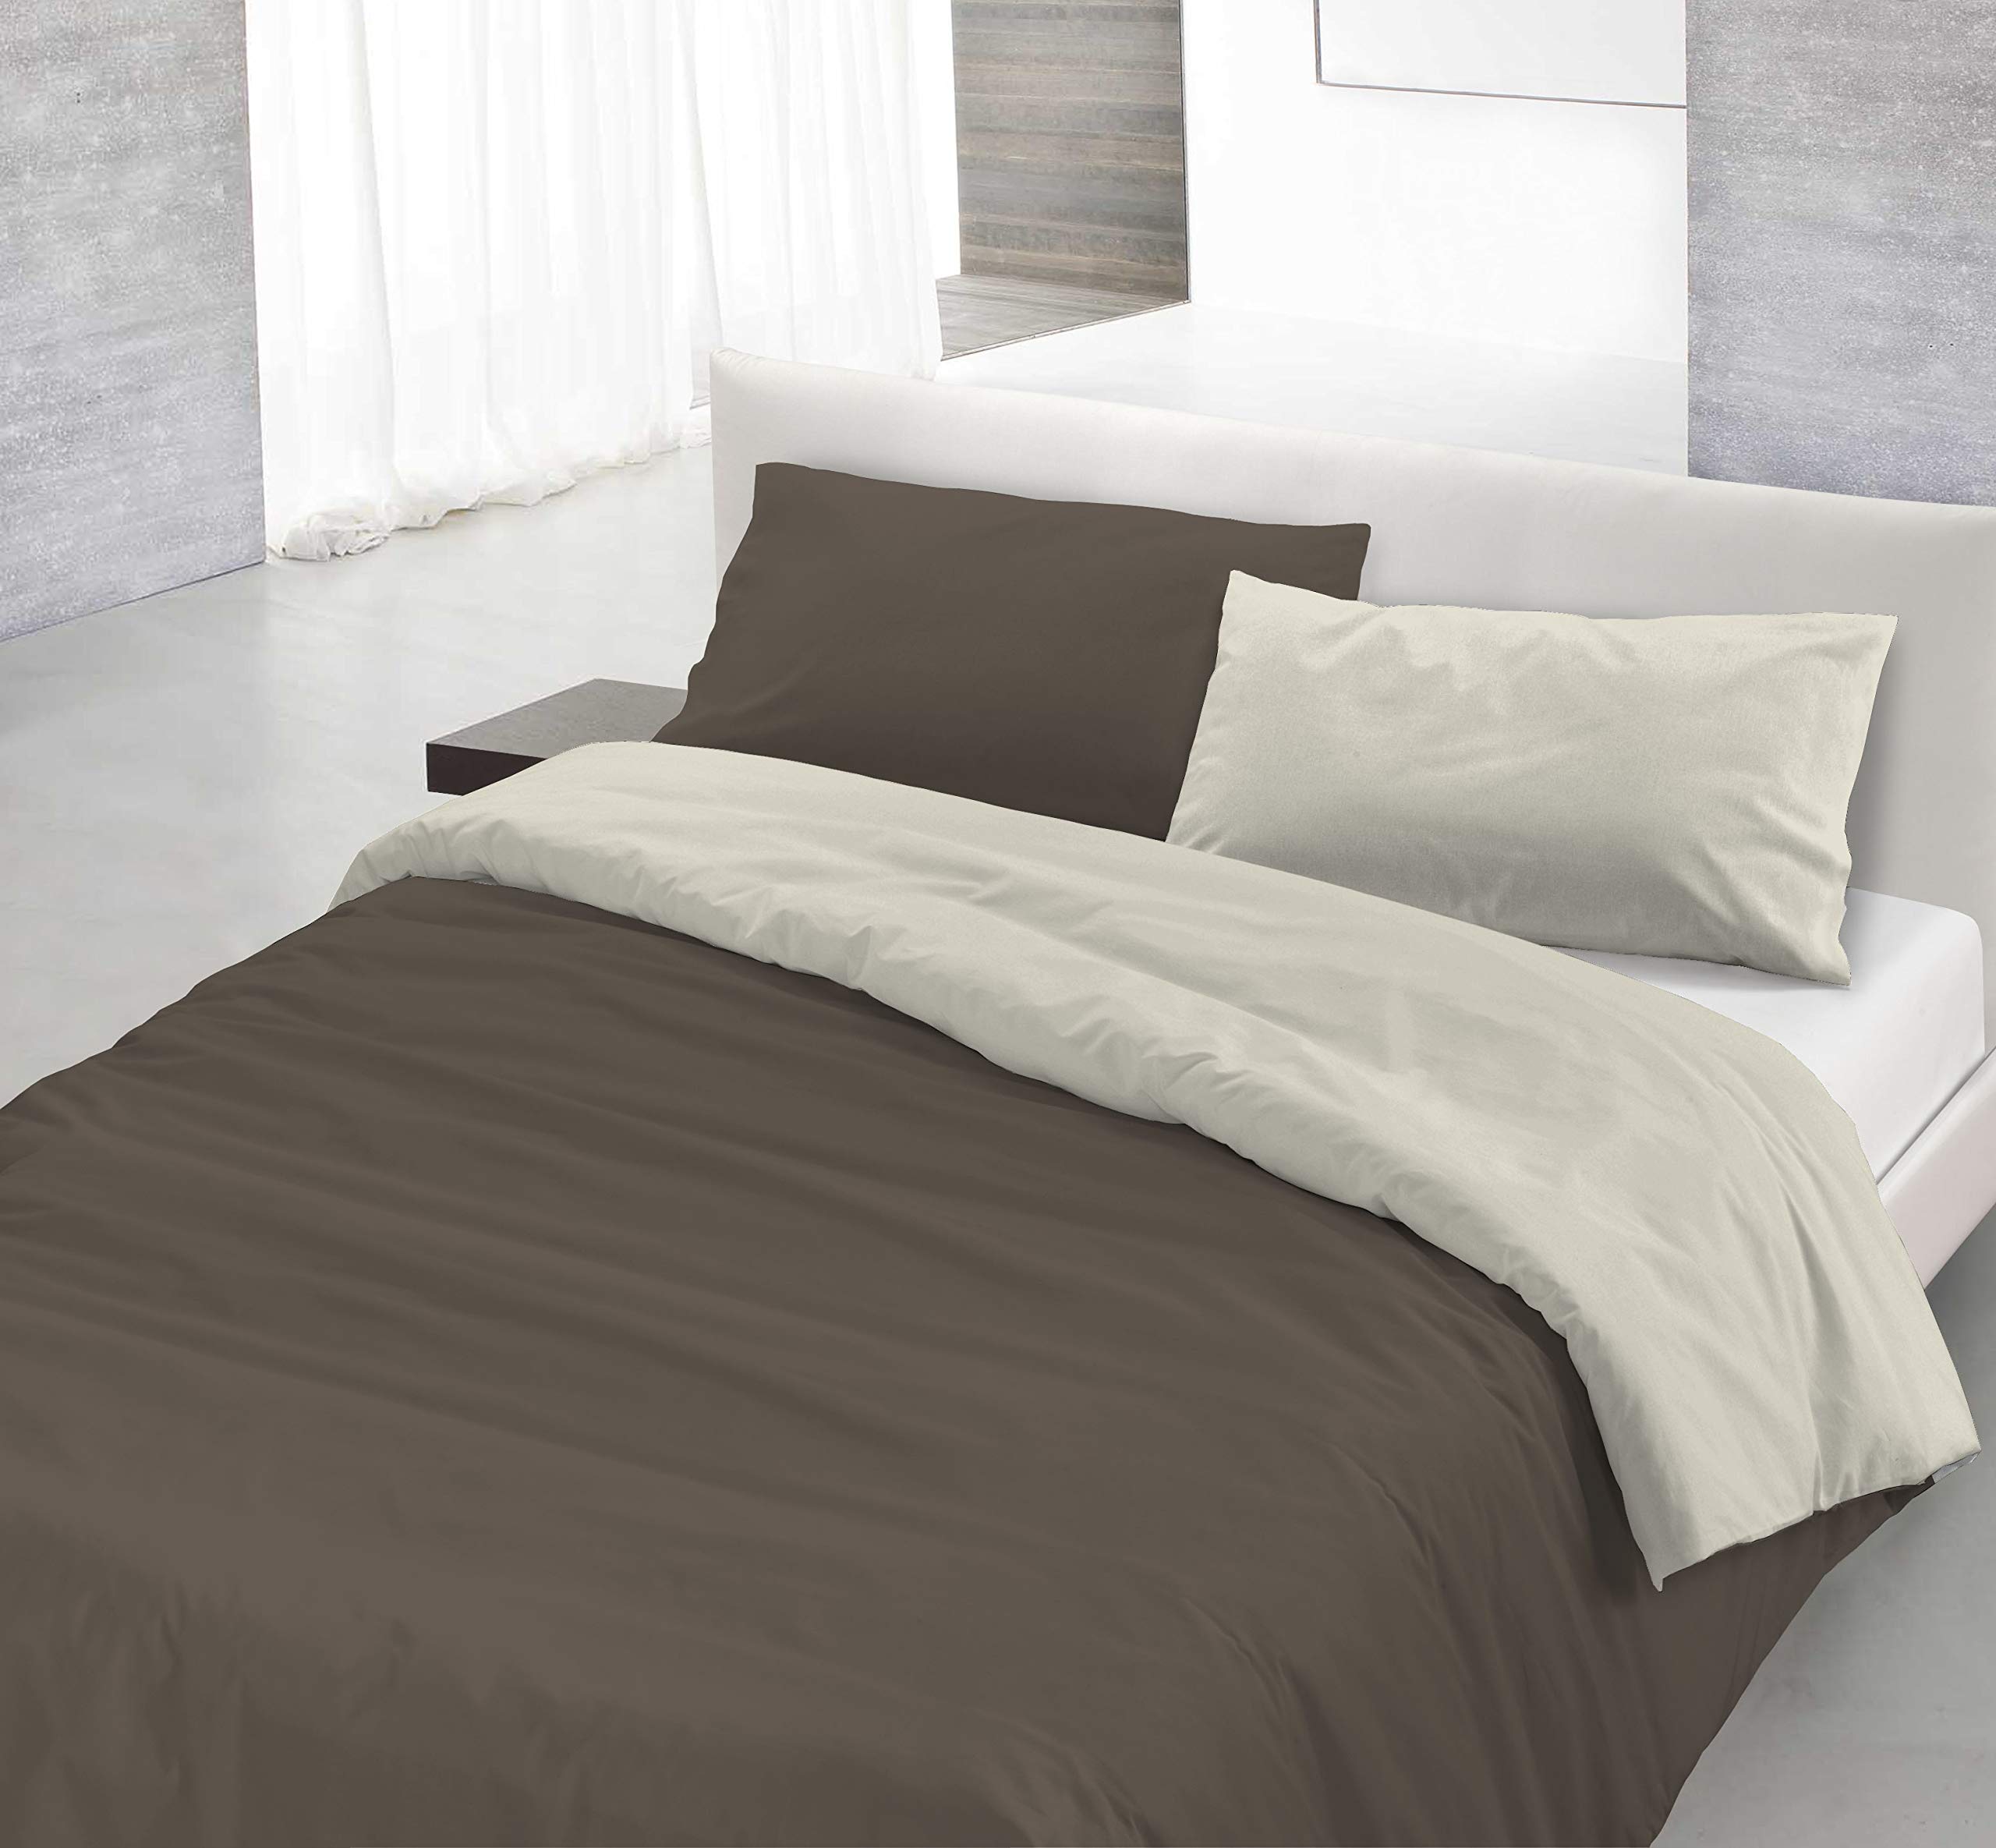 Italian Bed Linen Natürliches Bettbezug-Set mit Tasche und Kissenbezügen, 100% Baumwolle, Braun/Creme, Doppelbett, 3 Einheiten